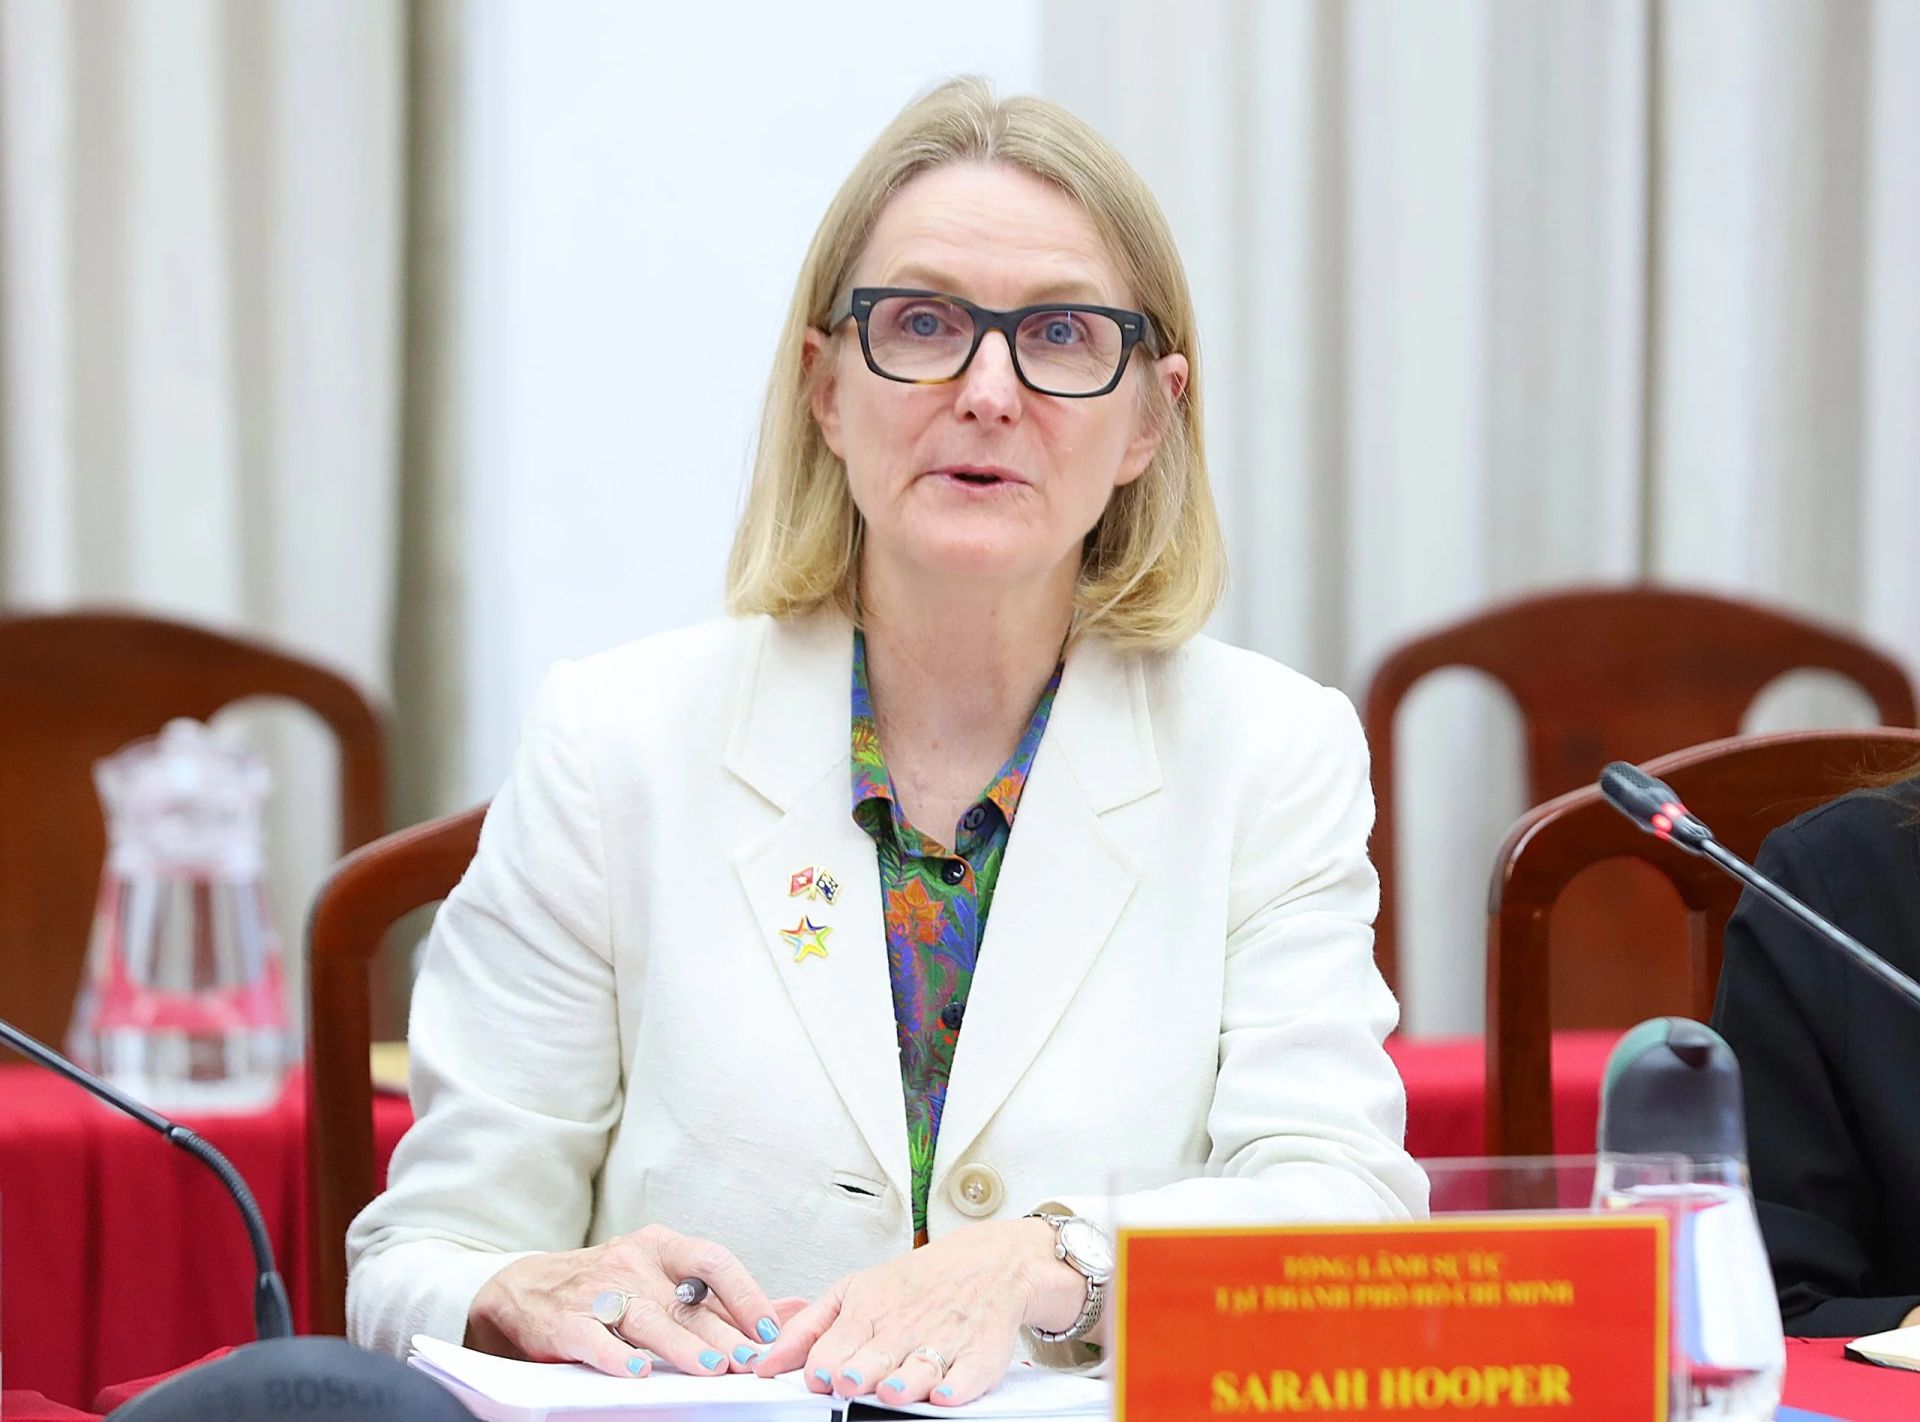 Bà Sarah Hopper - Tổng lãnh sự Úc tại TP. Hồ Chí Minh phát biểu tại buổi làm việc.